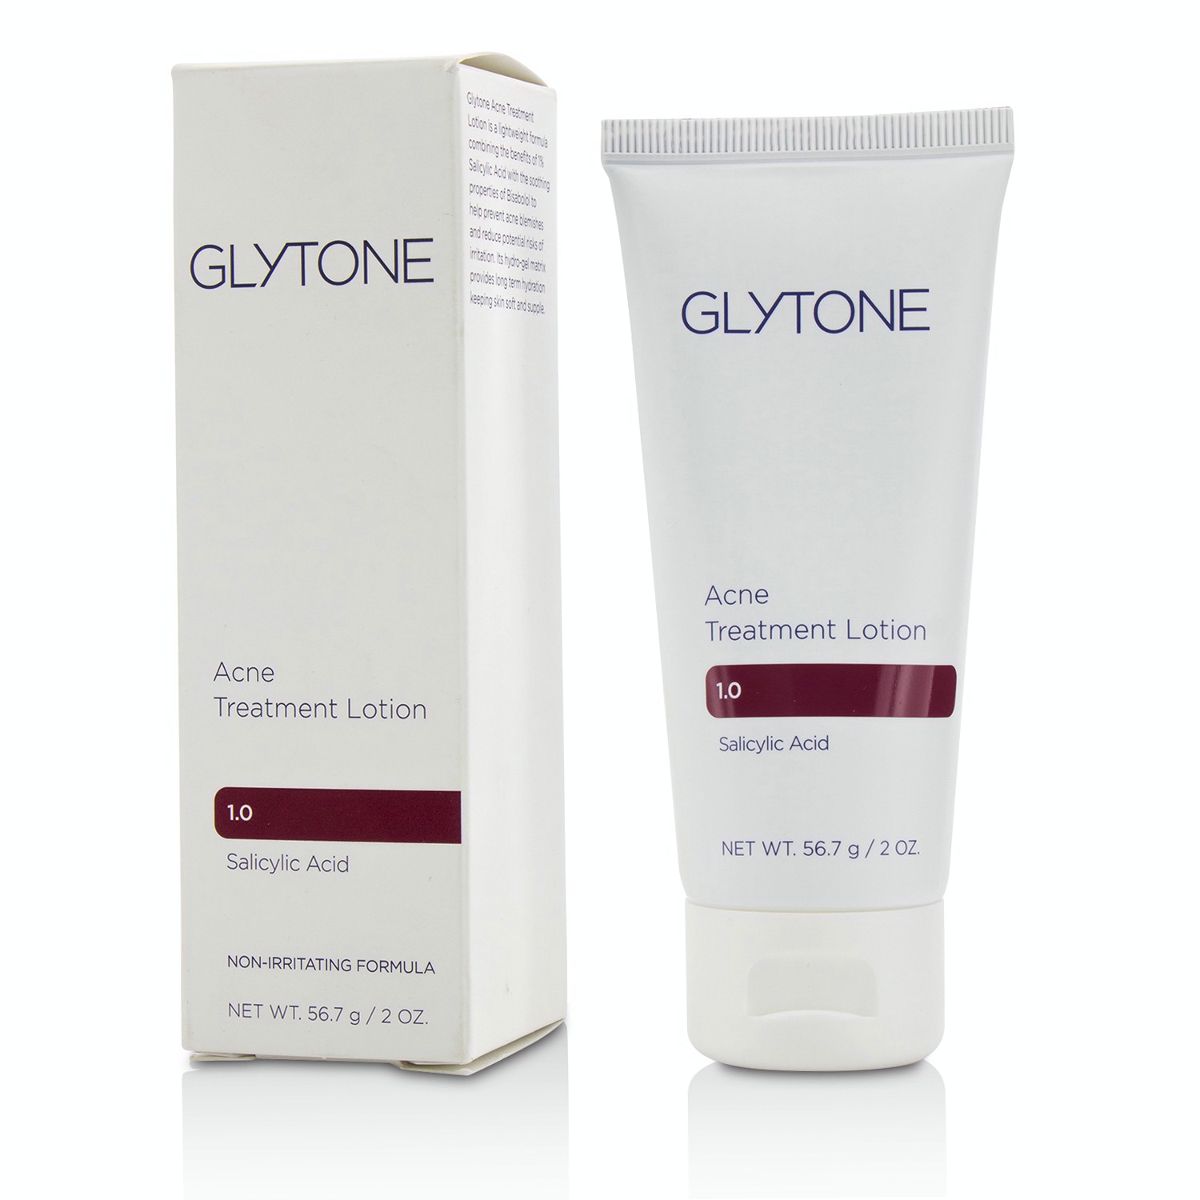 Acne Treatment Lotion Glytone Image